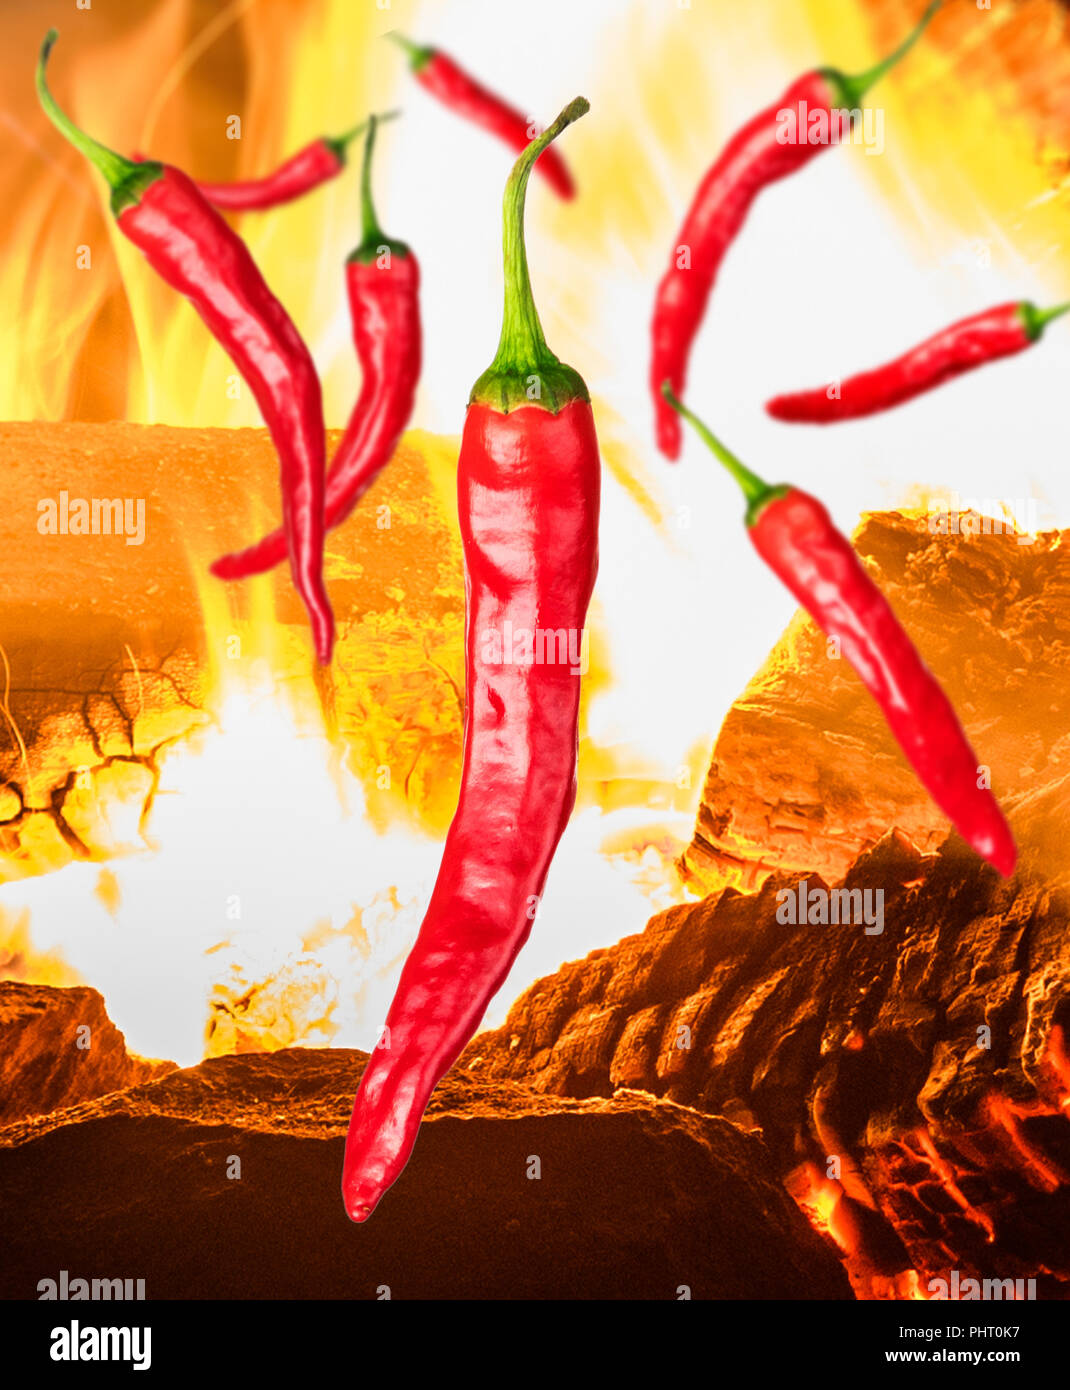 Ein paar Stücke von red chili peppers auf Hintergrund mit Feuer Stockfoto